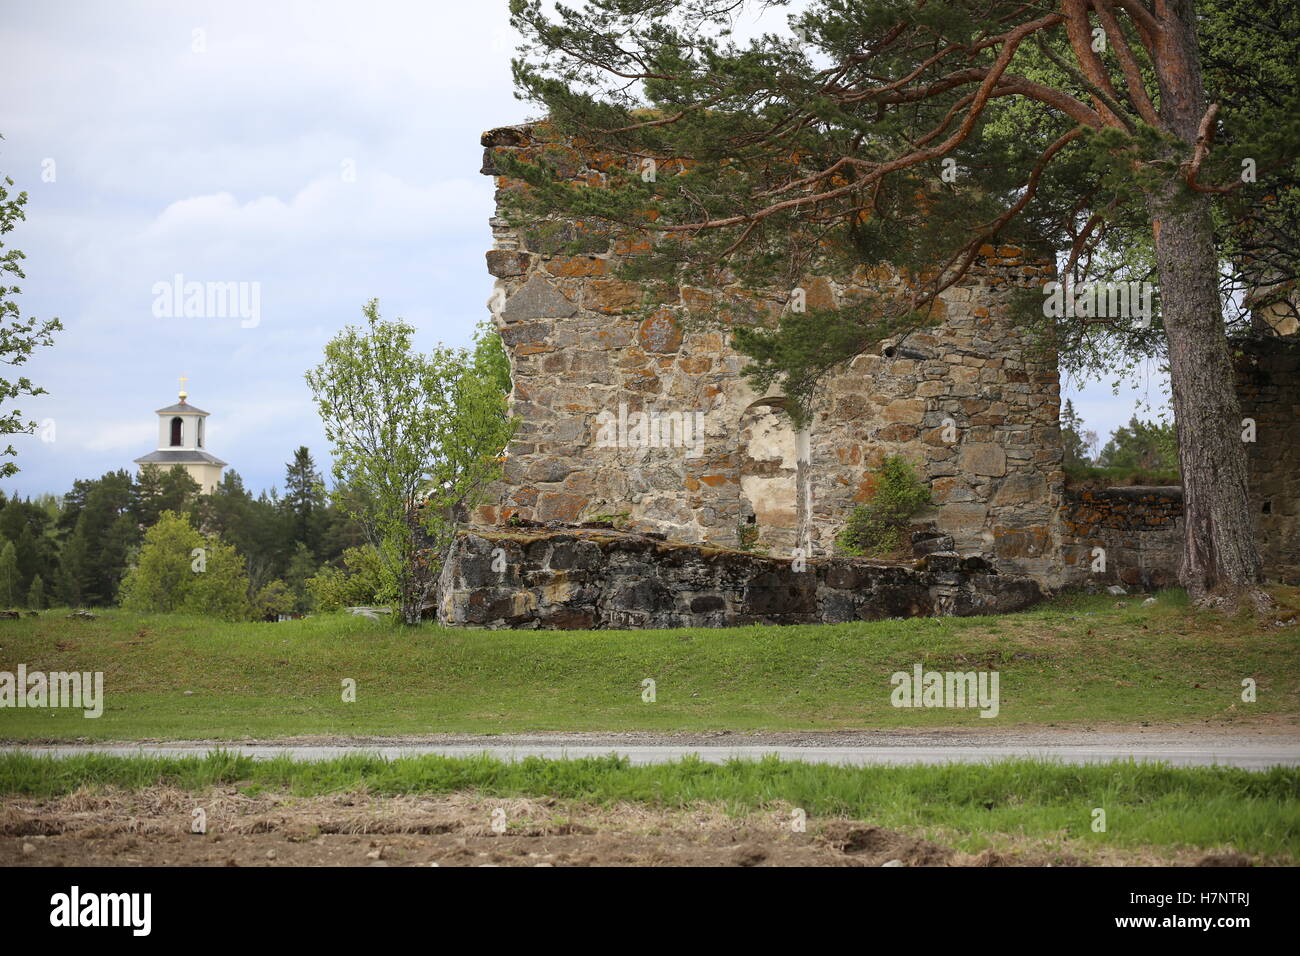 Chiesa rovina e la nuova chiesa di Sunne nella contea di Jamtland, Svezia. Foto Stock